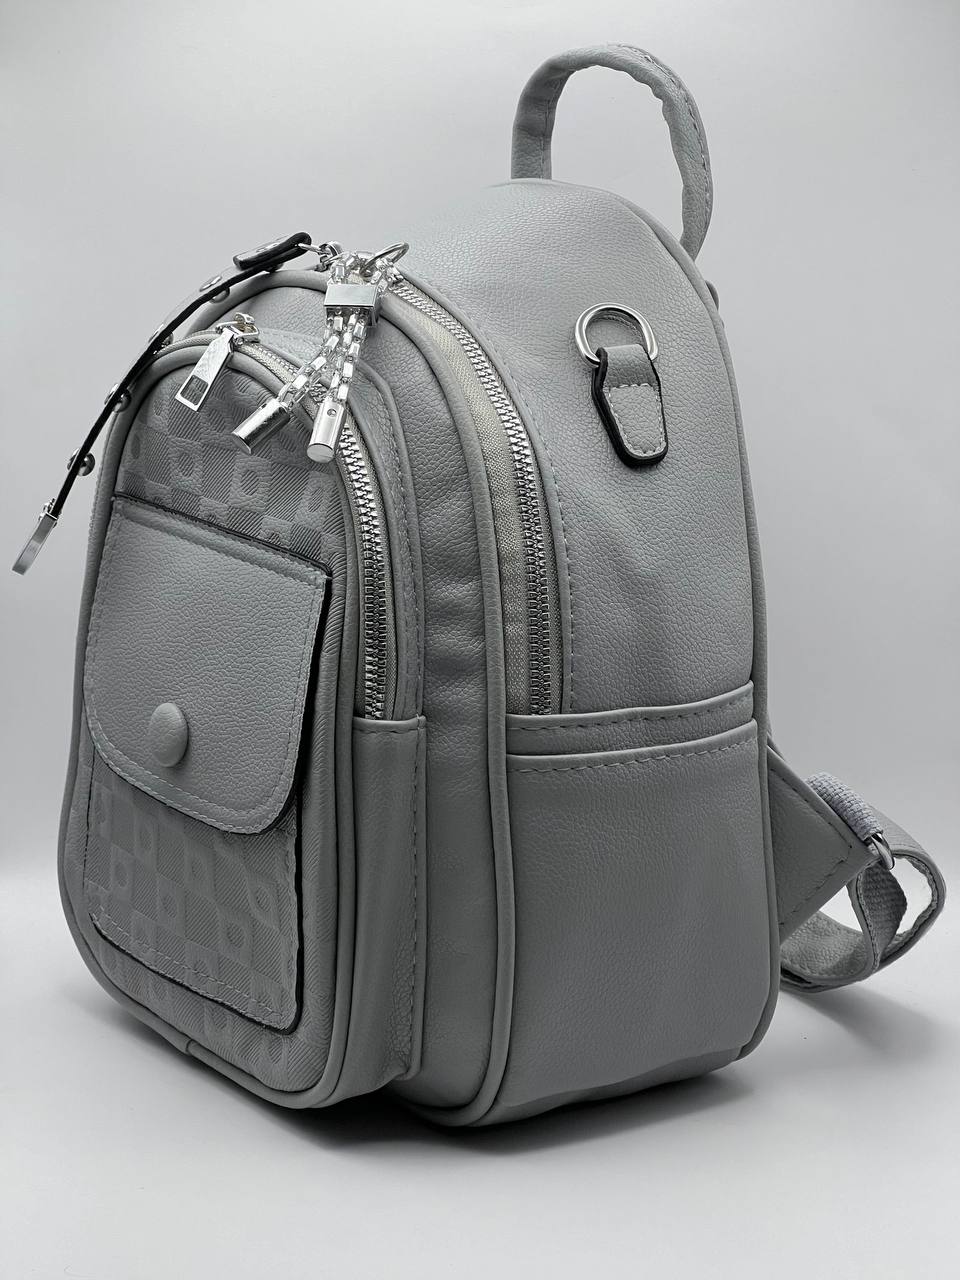 Сумка-рюкзак женская SunGold Р-92006 серая, 27х22х12 см